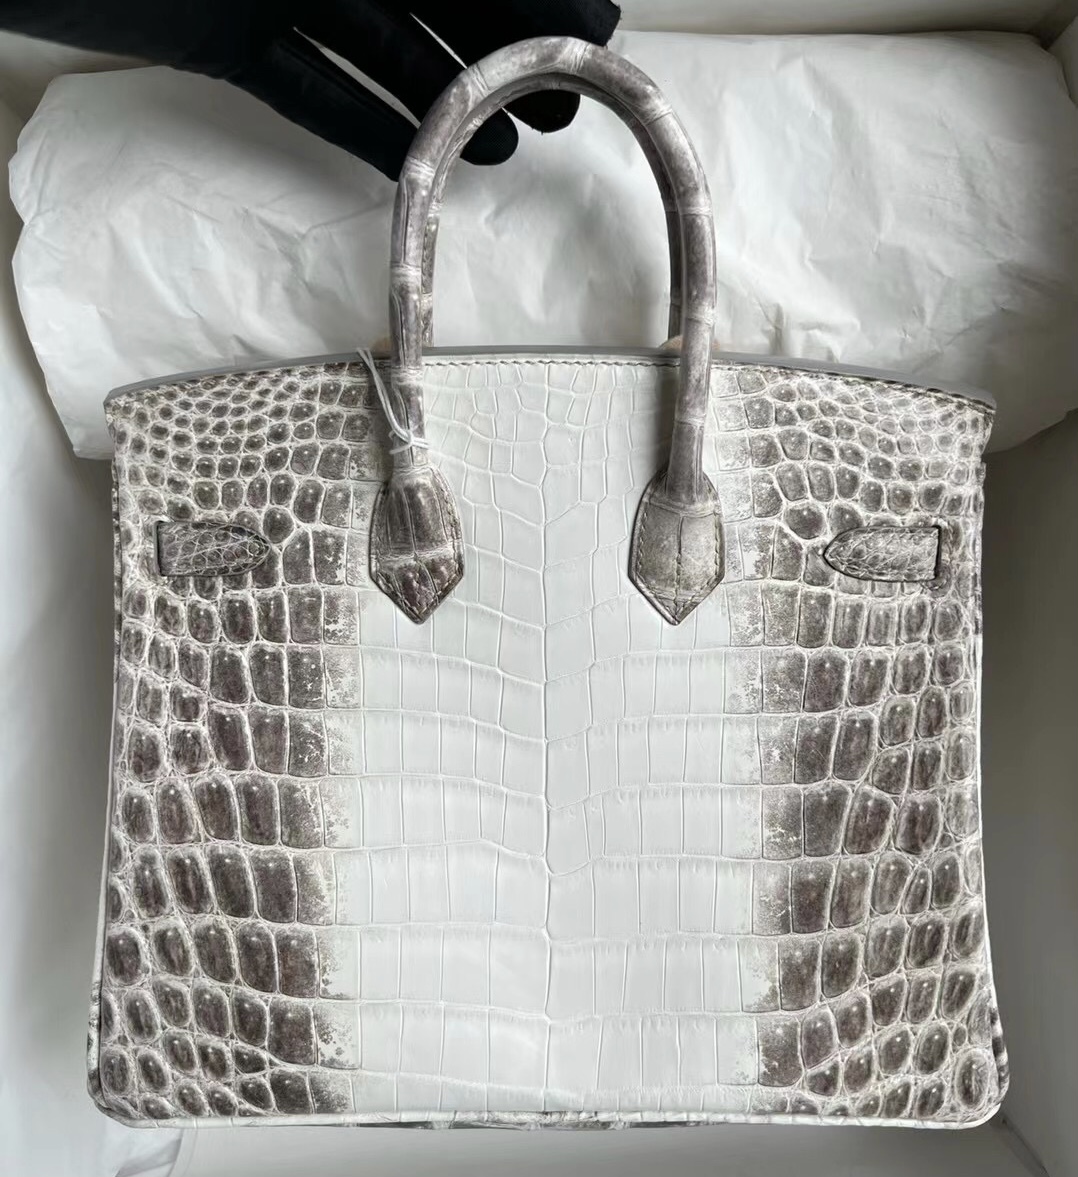 愛馬仕現貨喜馬拉雅 Singapore Hermès Birkin 25 BLANC Himalayan Crocodile